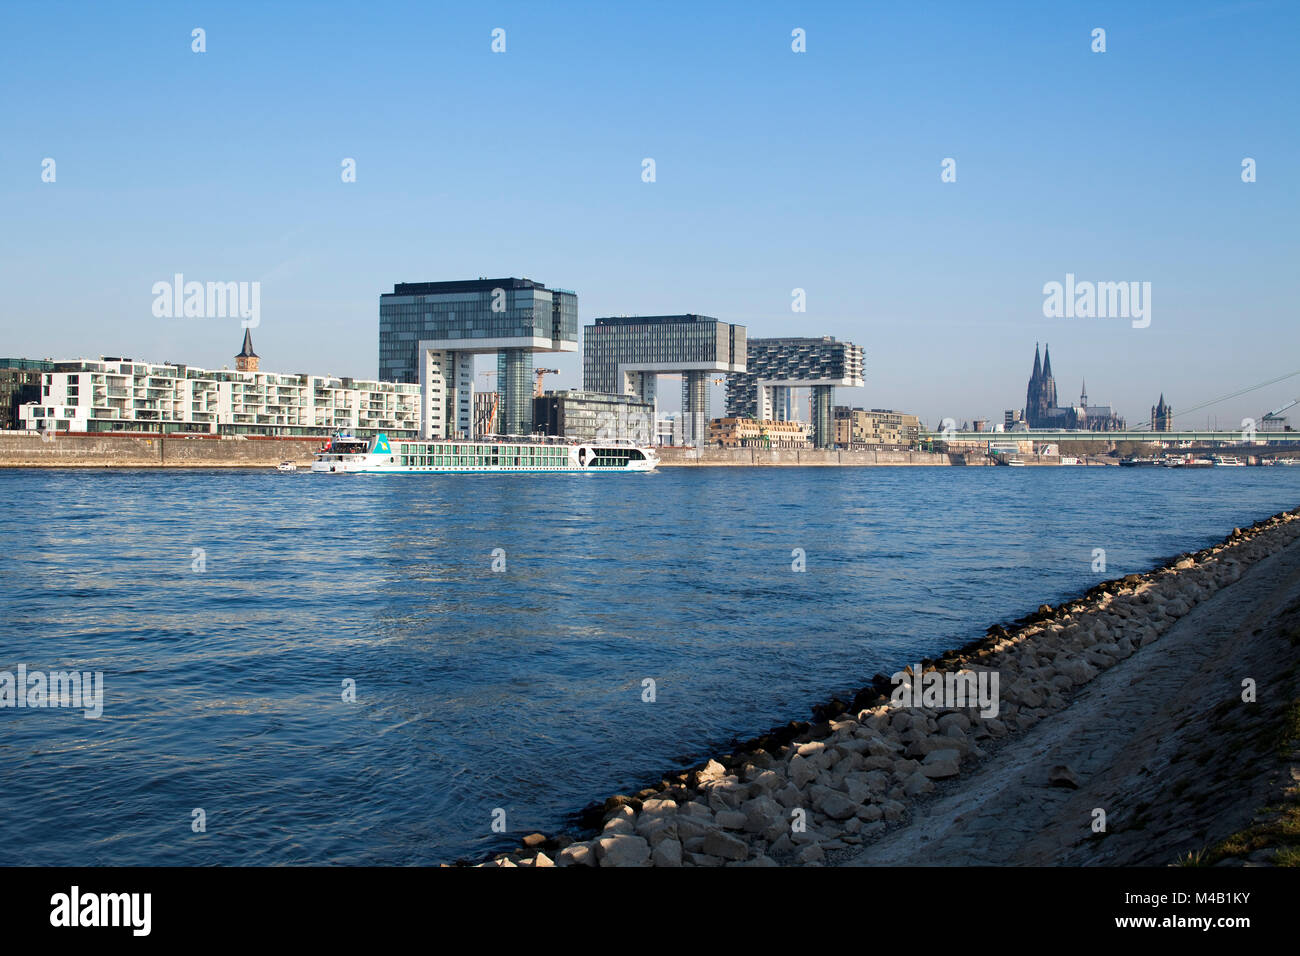 Projet de développement urbain dans l'ancien port industriel 'Rheinauhafen' au bord du Rhin à Cologne, Allemagne Banque D'Images